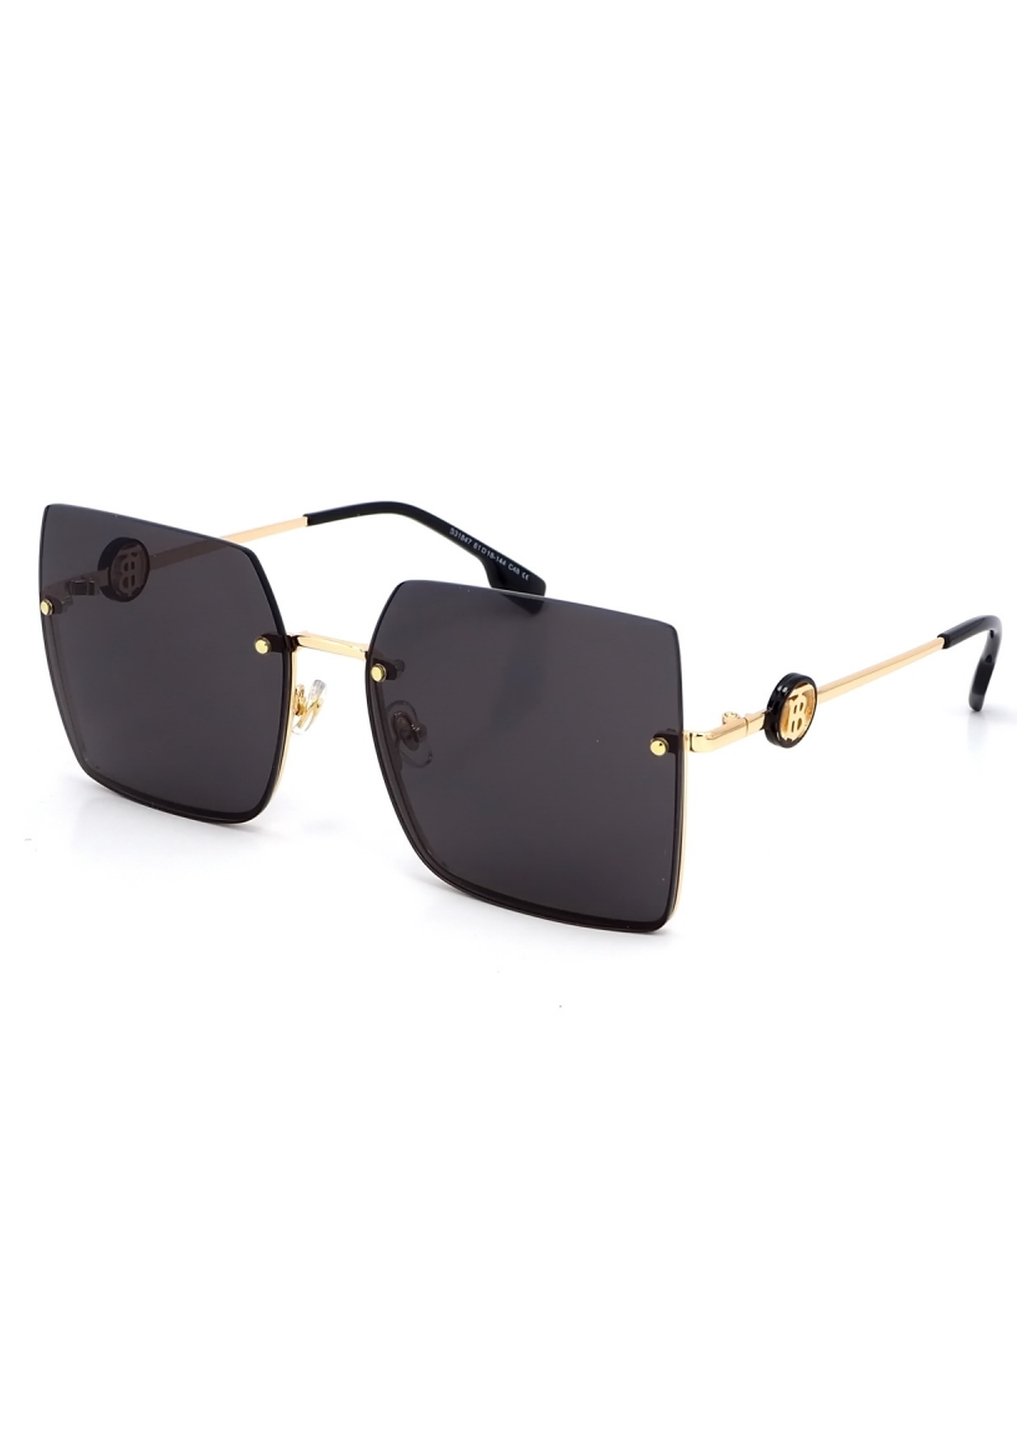 Купить Женские солнцезащитные очки Merlini с поляризацией S31847 117117 - Золотистый в интернет-магазине